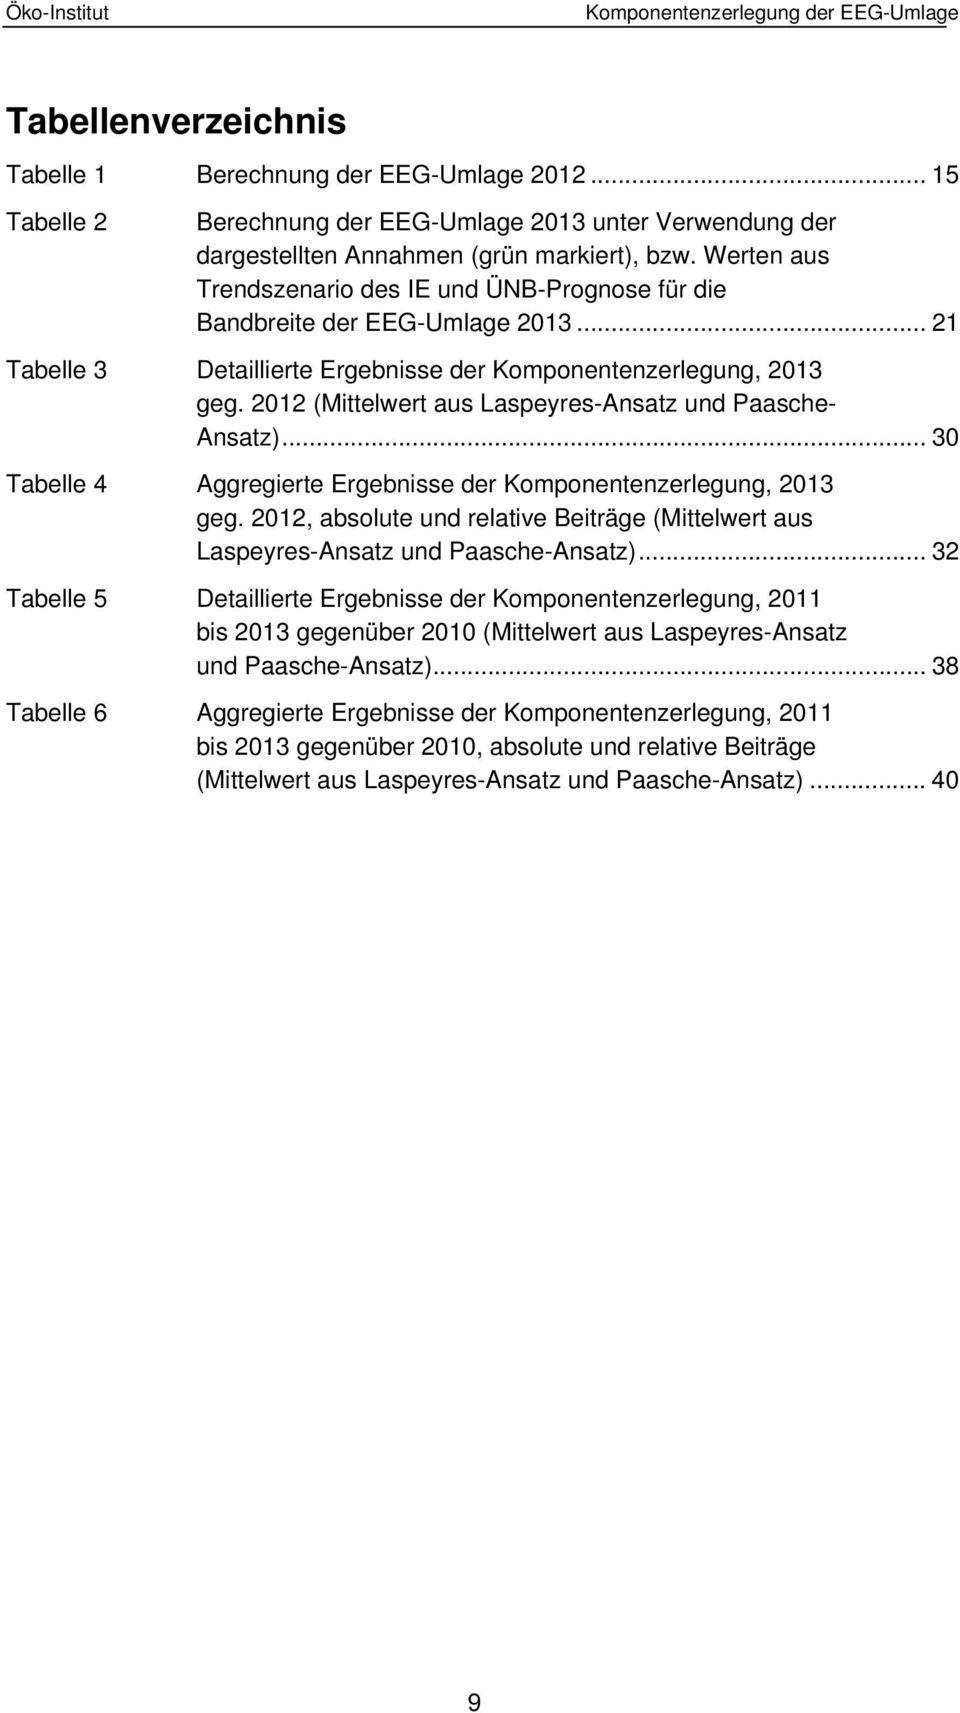 Werten aus Trendszenario des IE und ÜNB-Prognose für die Bandbreite der EEG-Umlage 2013... 21 Tabelle 3 Detaillierte Ergebnisse der Komponentenzerlegung, 2013 geg.